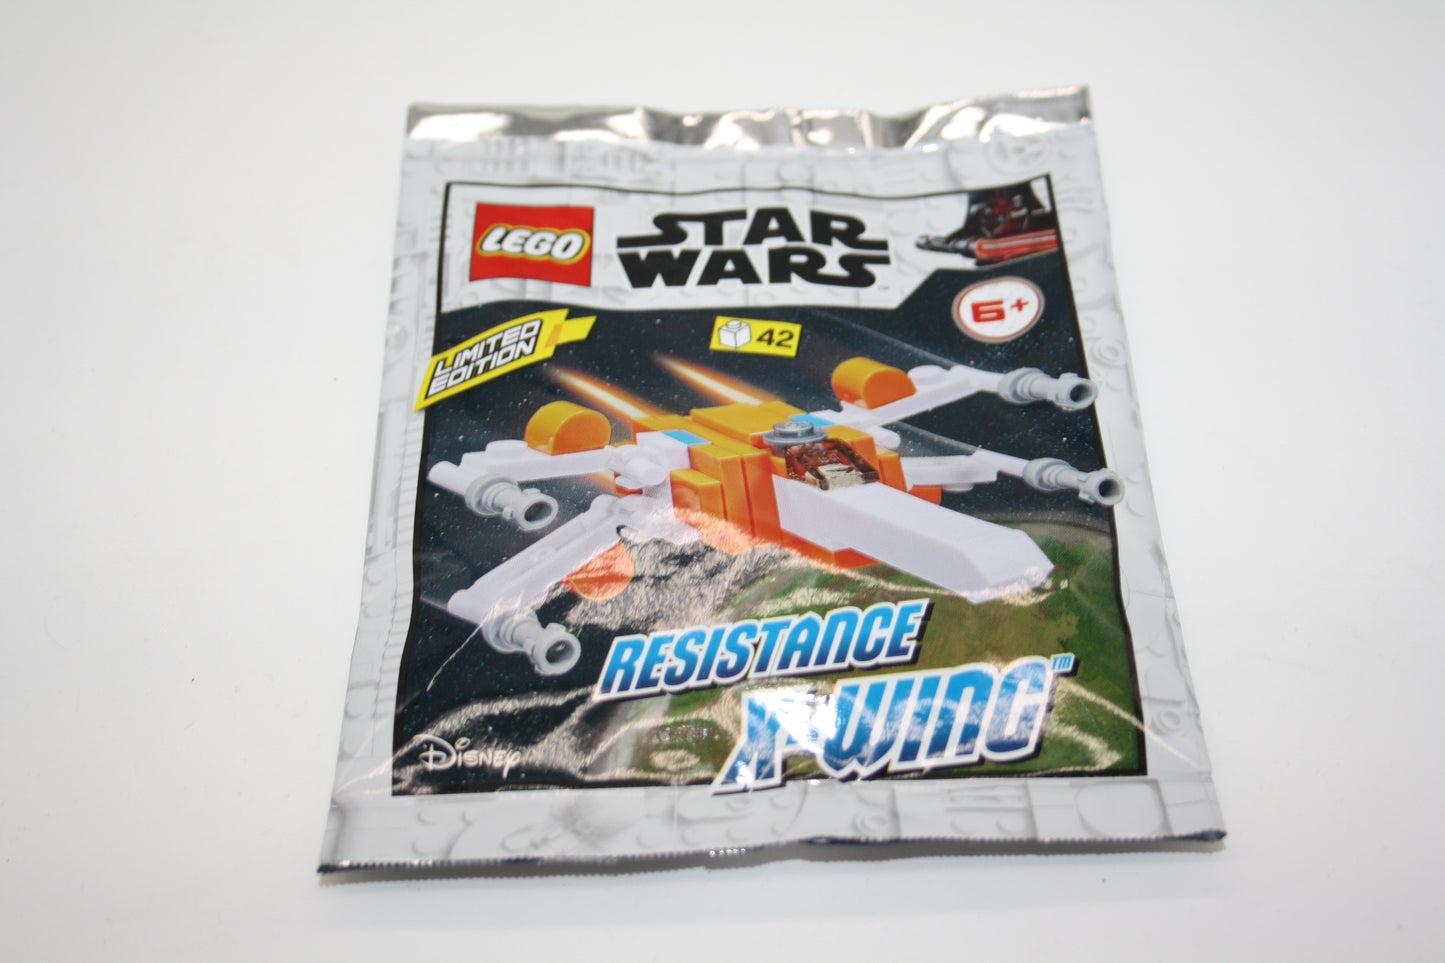 LEGO® - Resistance X-Wing - Miniatur Schiff - Polybag - Neu/ungeöffnet - Star Wars